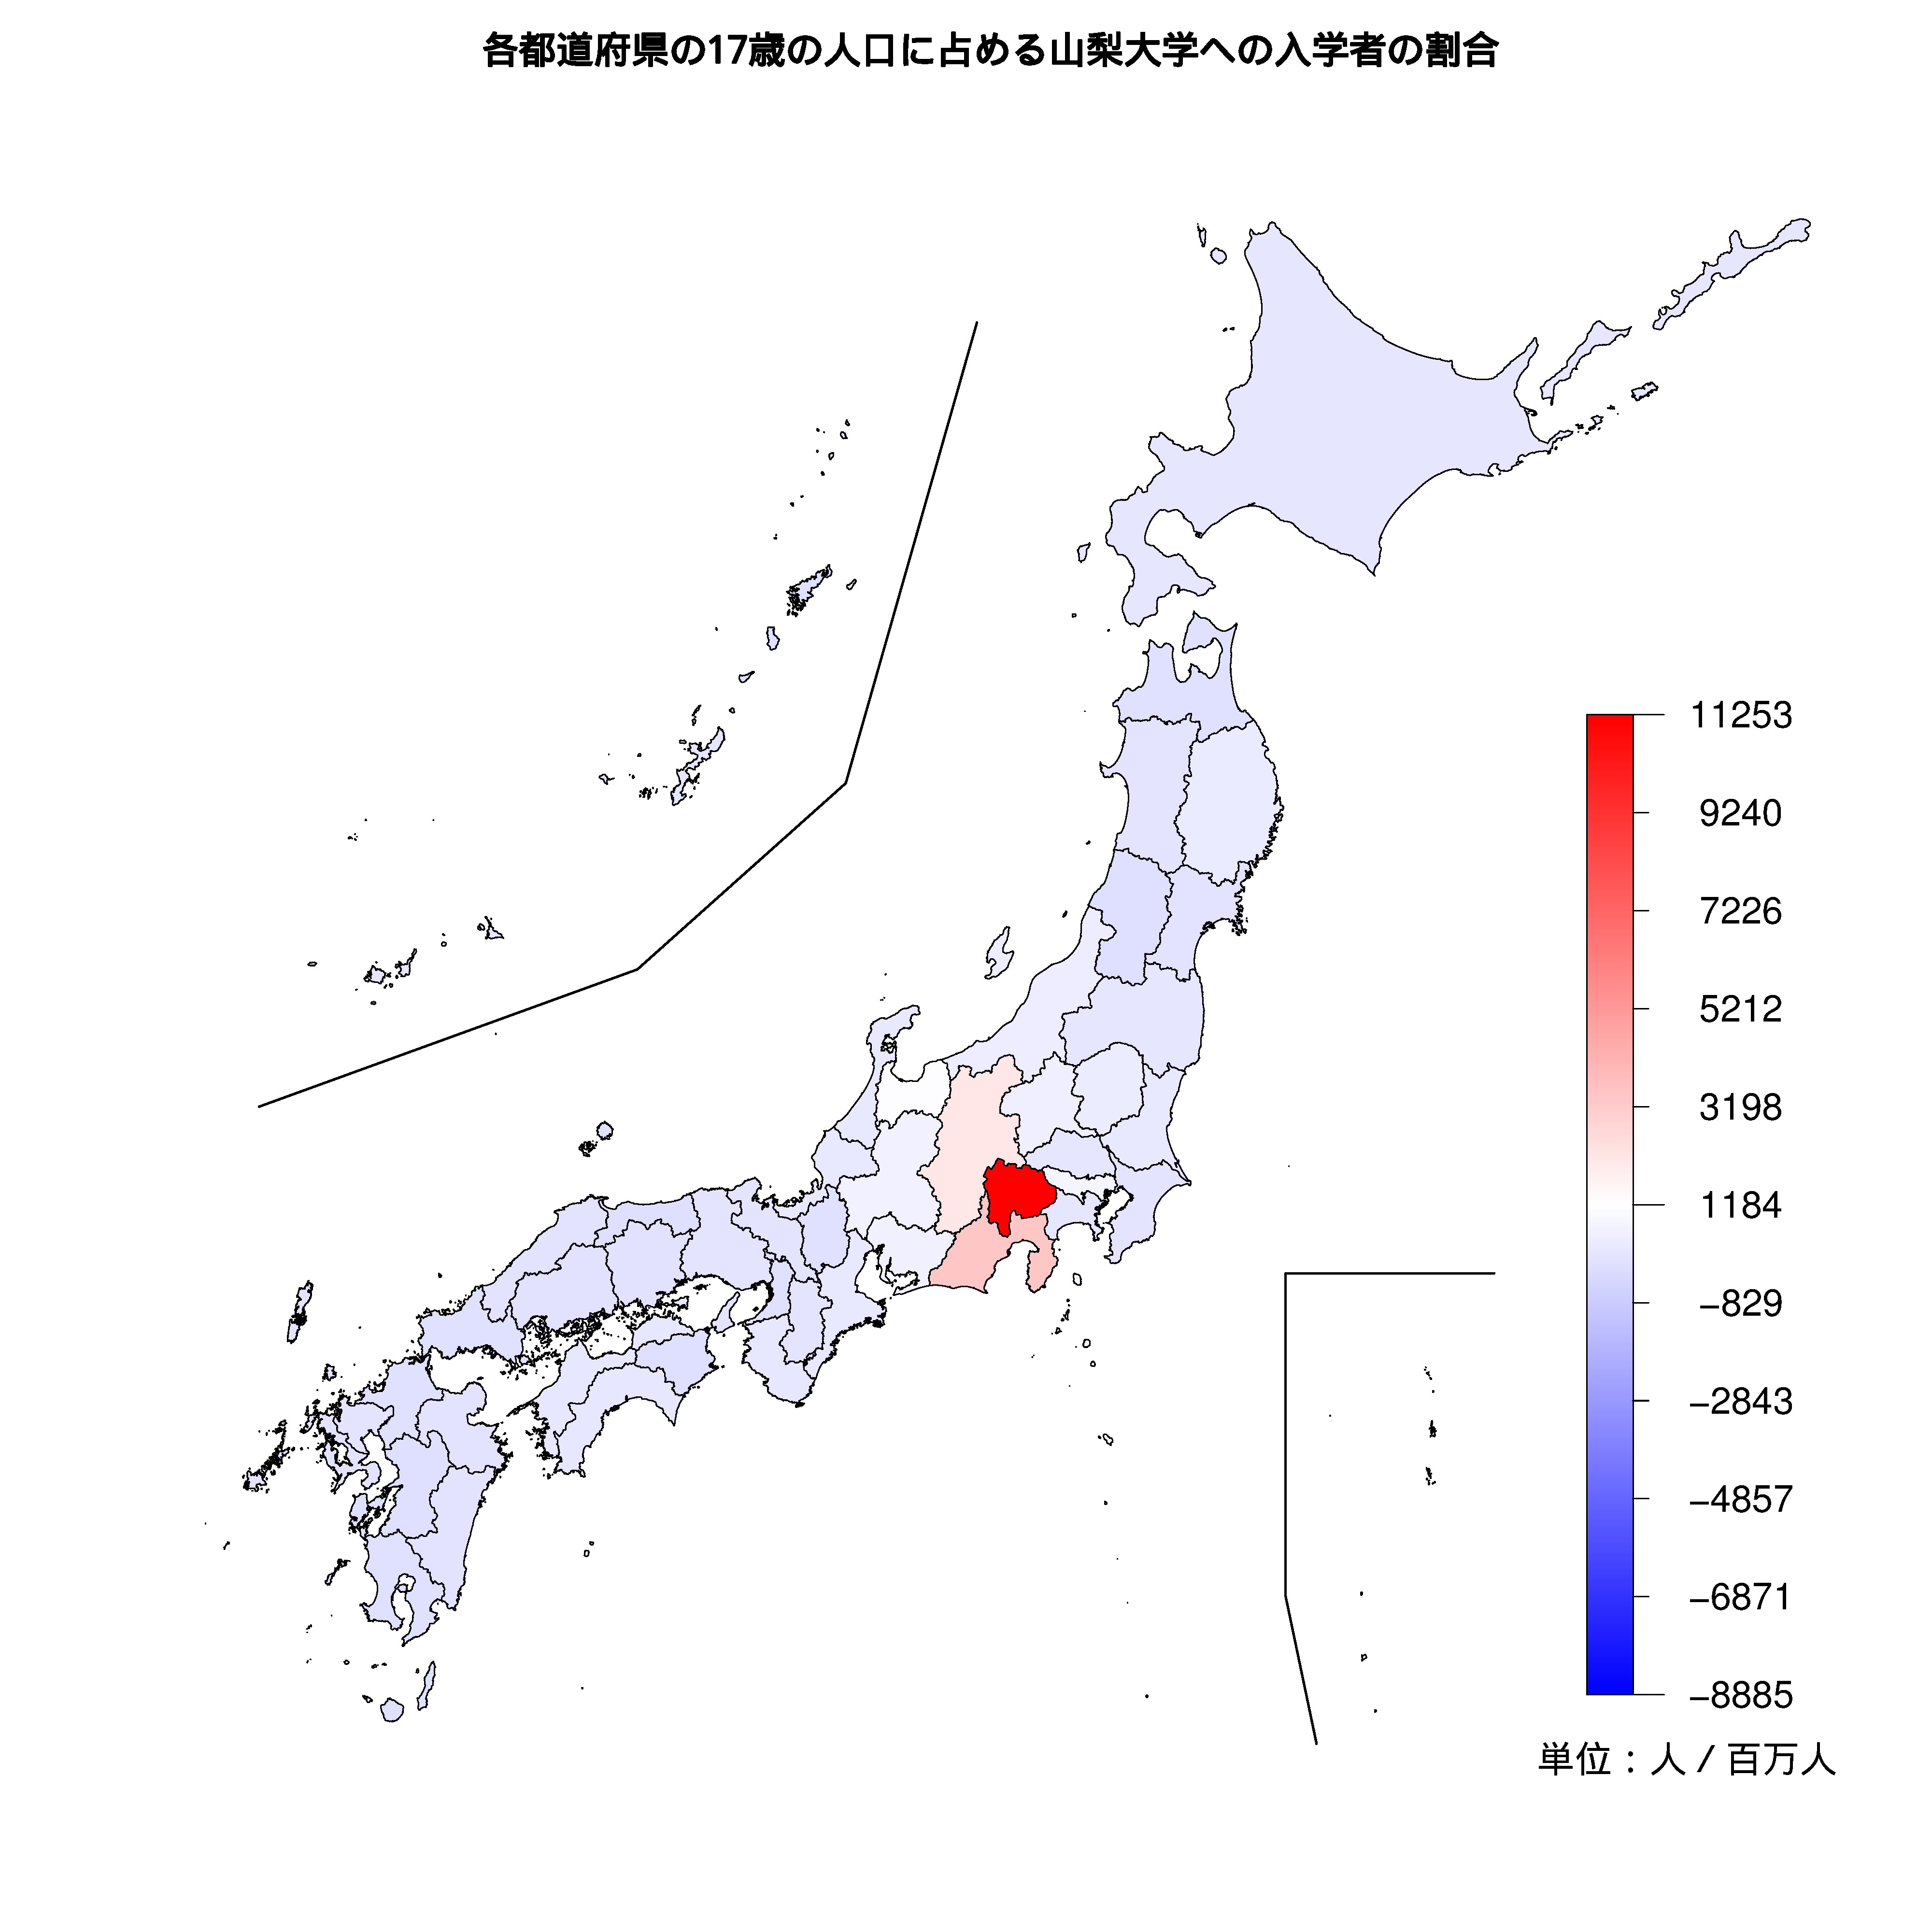 山梨大学への入学者が多い都道府県の色分け地図